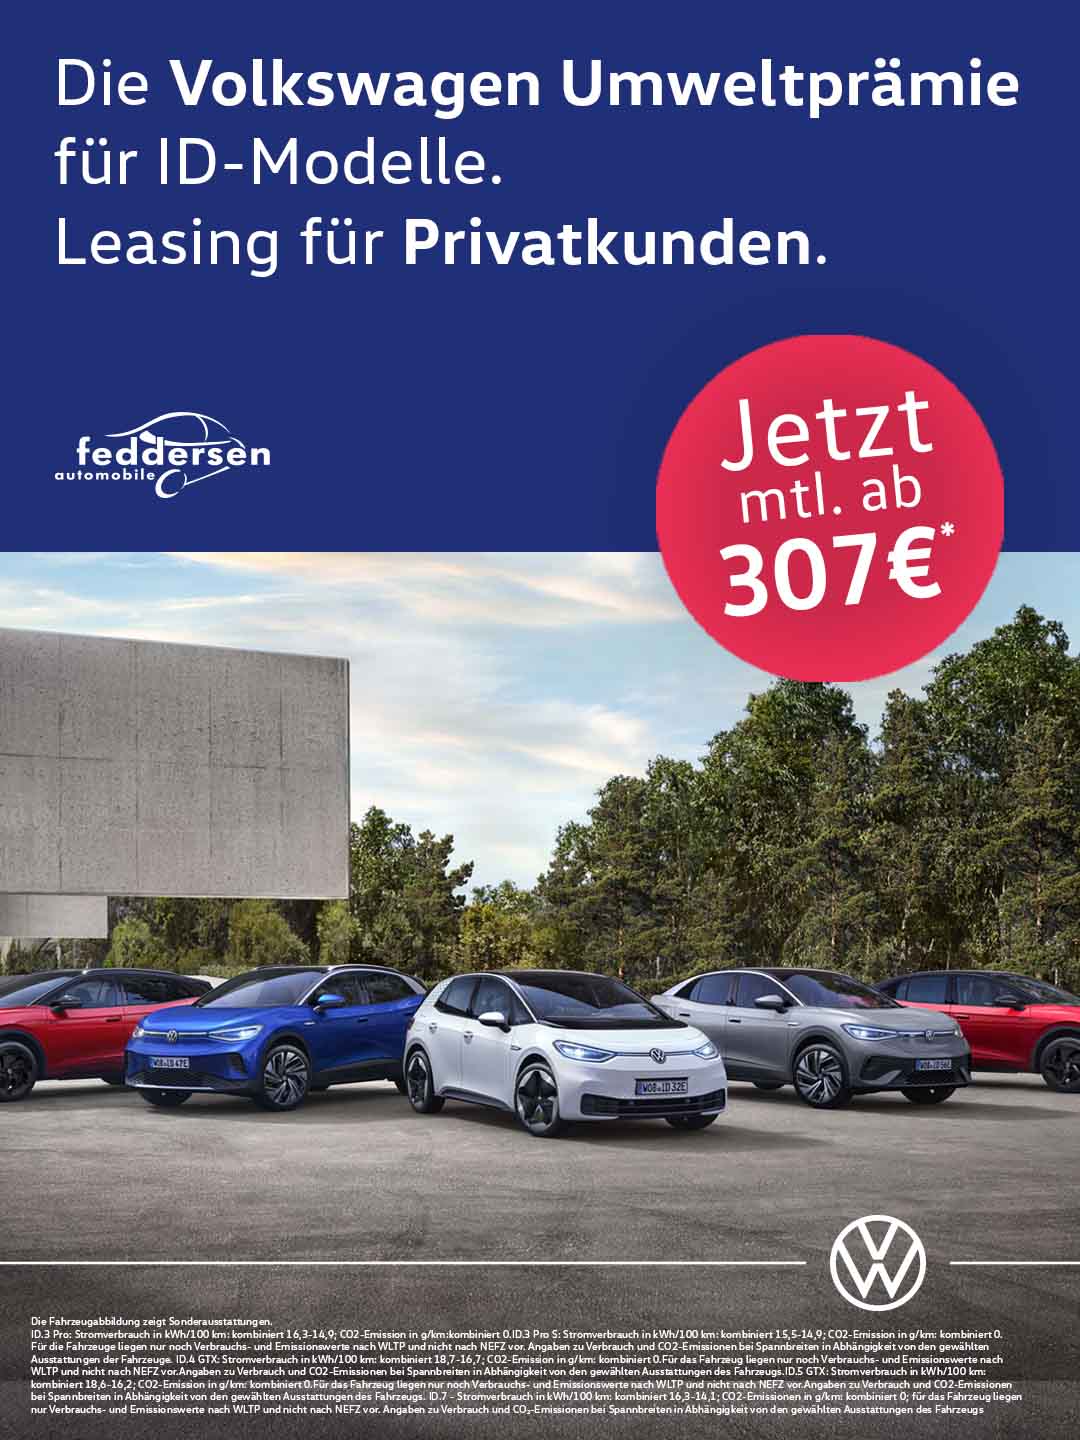 Die Volkswagen Umweltprämie für ID-Modelle. Leasing für Privatkunden.